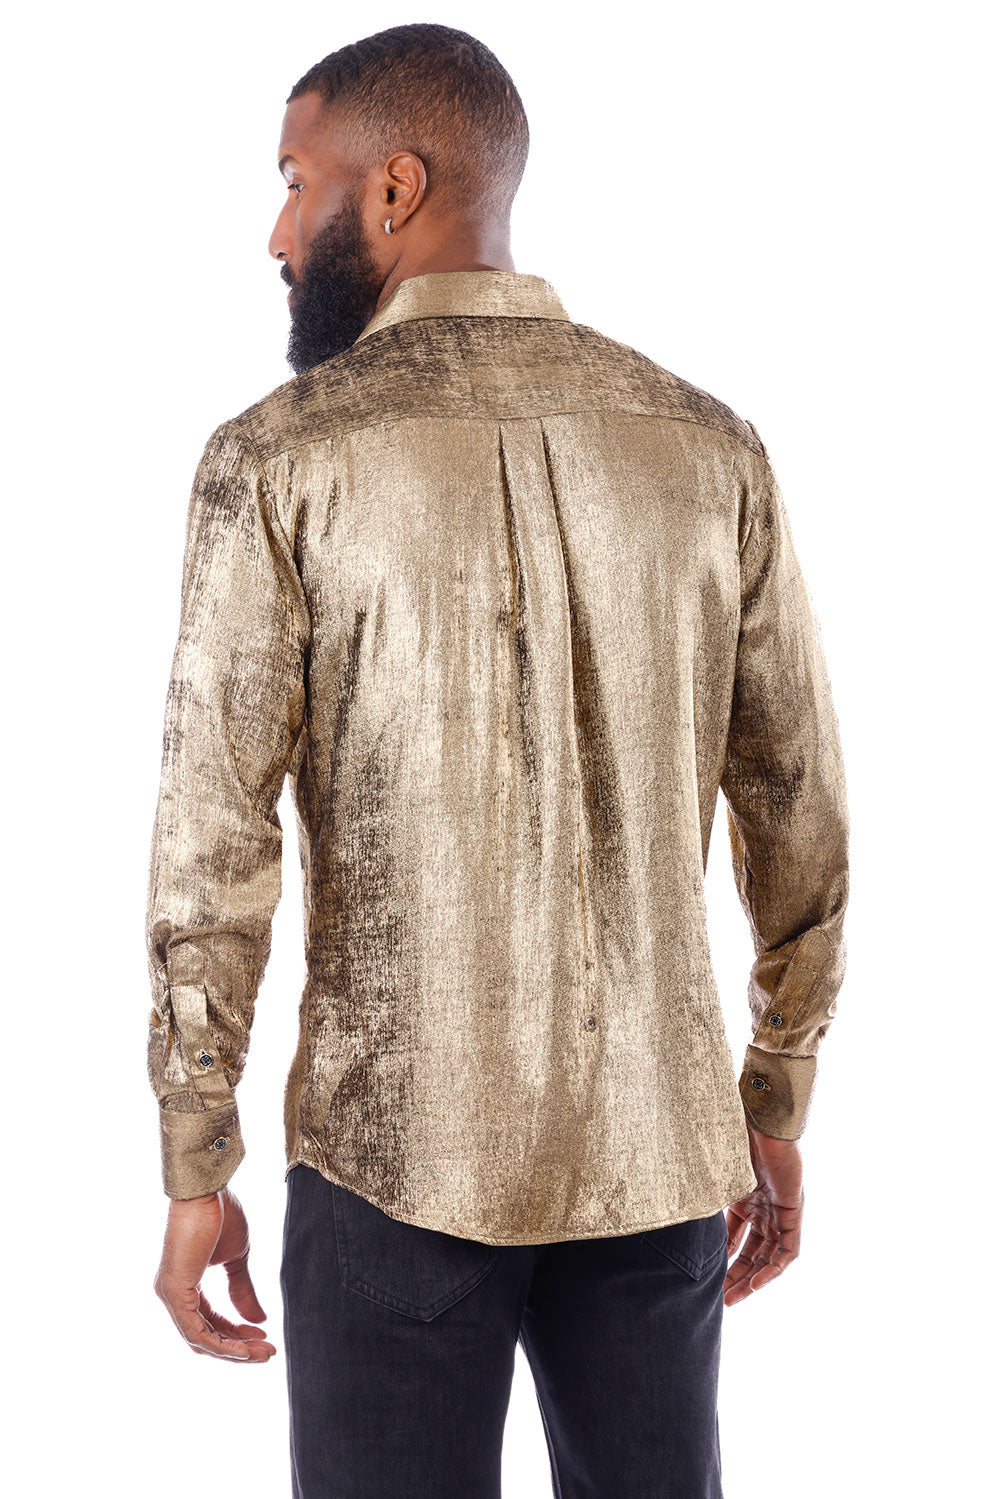 BARABAS Men's Metallic Shiny Button Down Long Sleeve Shirt 4B32 Gold